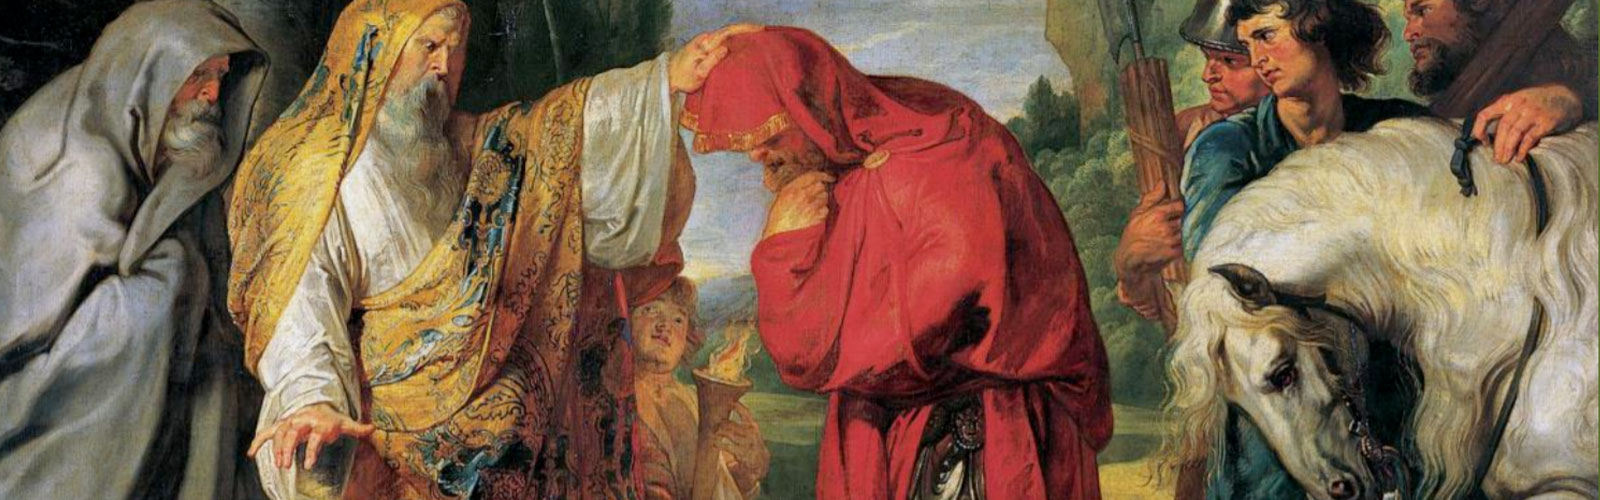 [ANNULLATO] La devotio da Livio a Rubens alle Torri gemelle